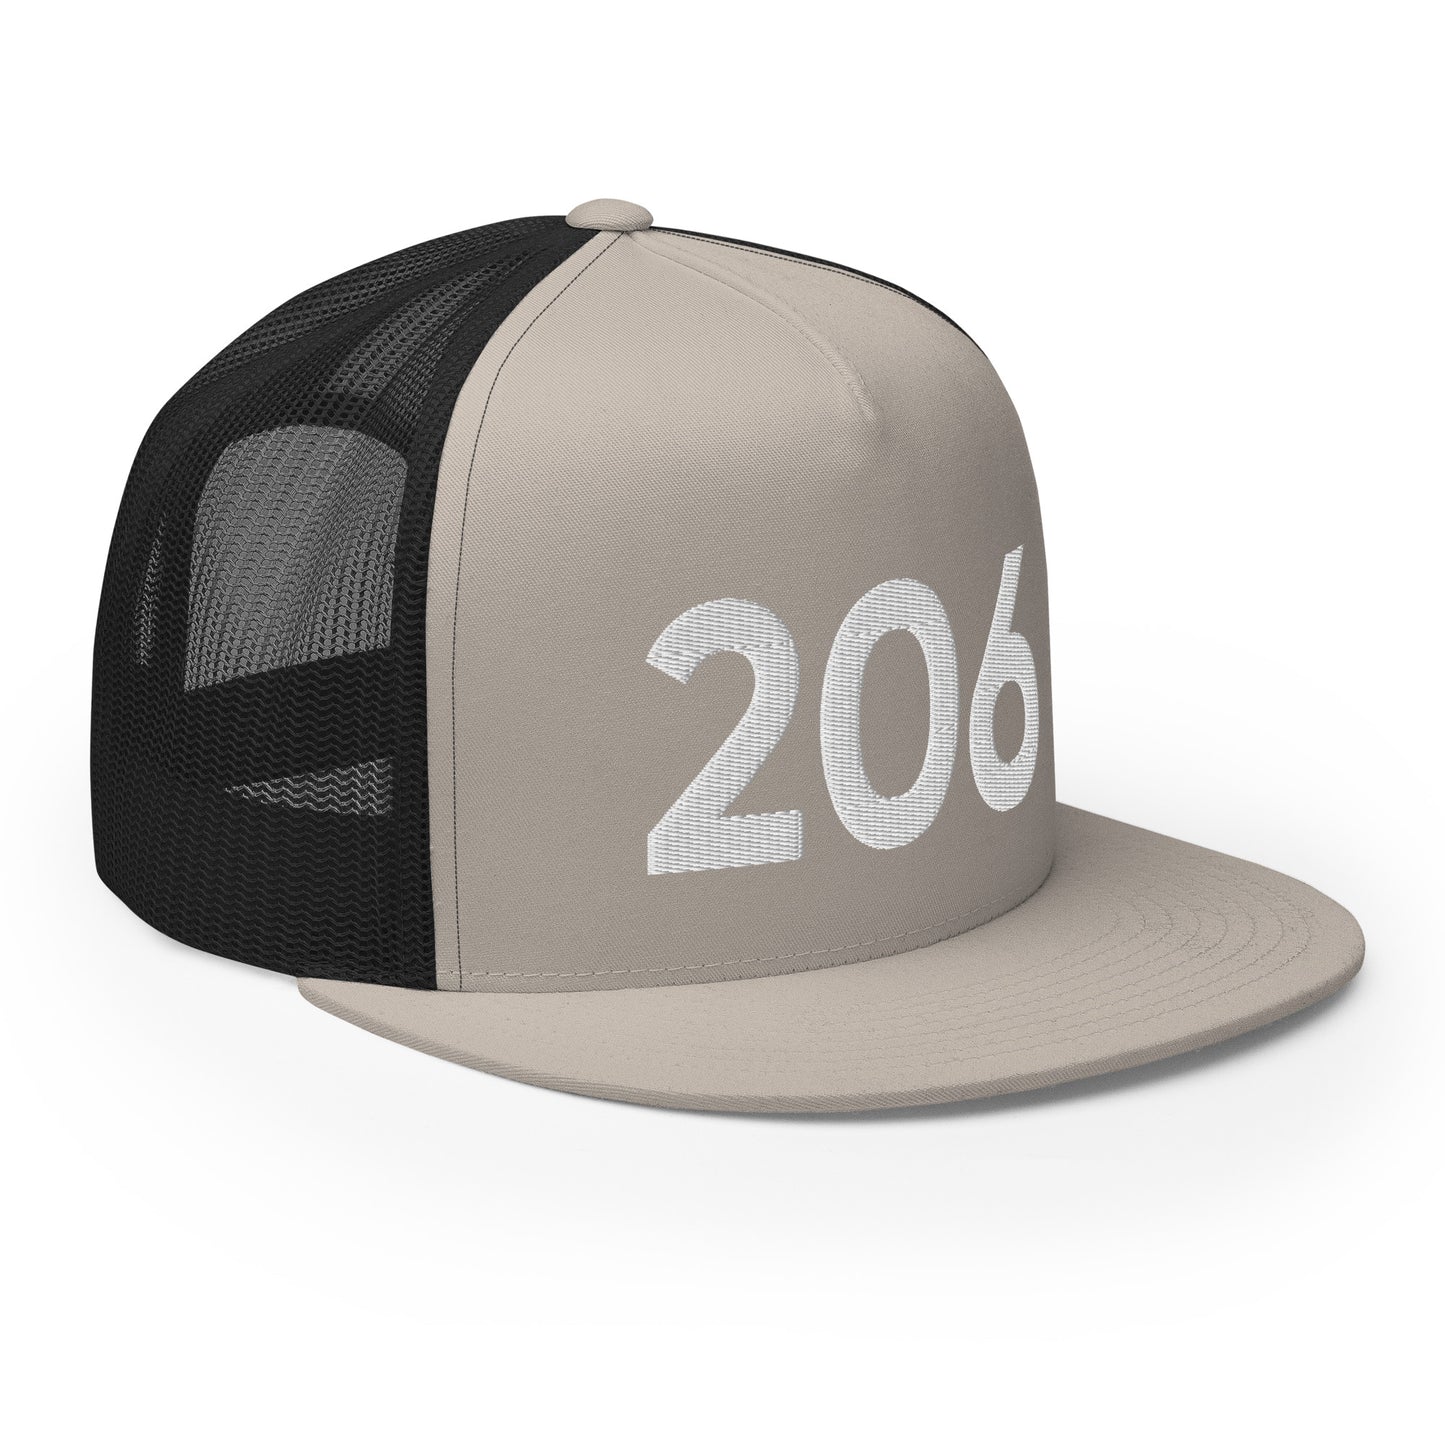 206 Seattle Trucker Hat